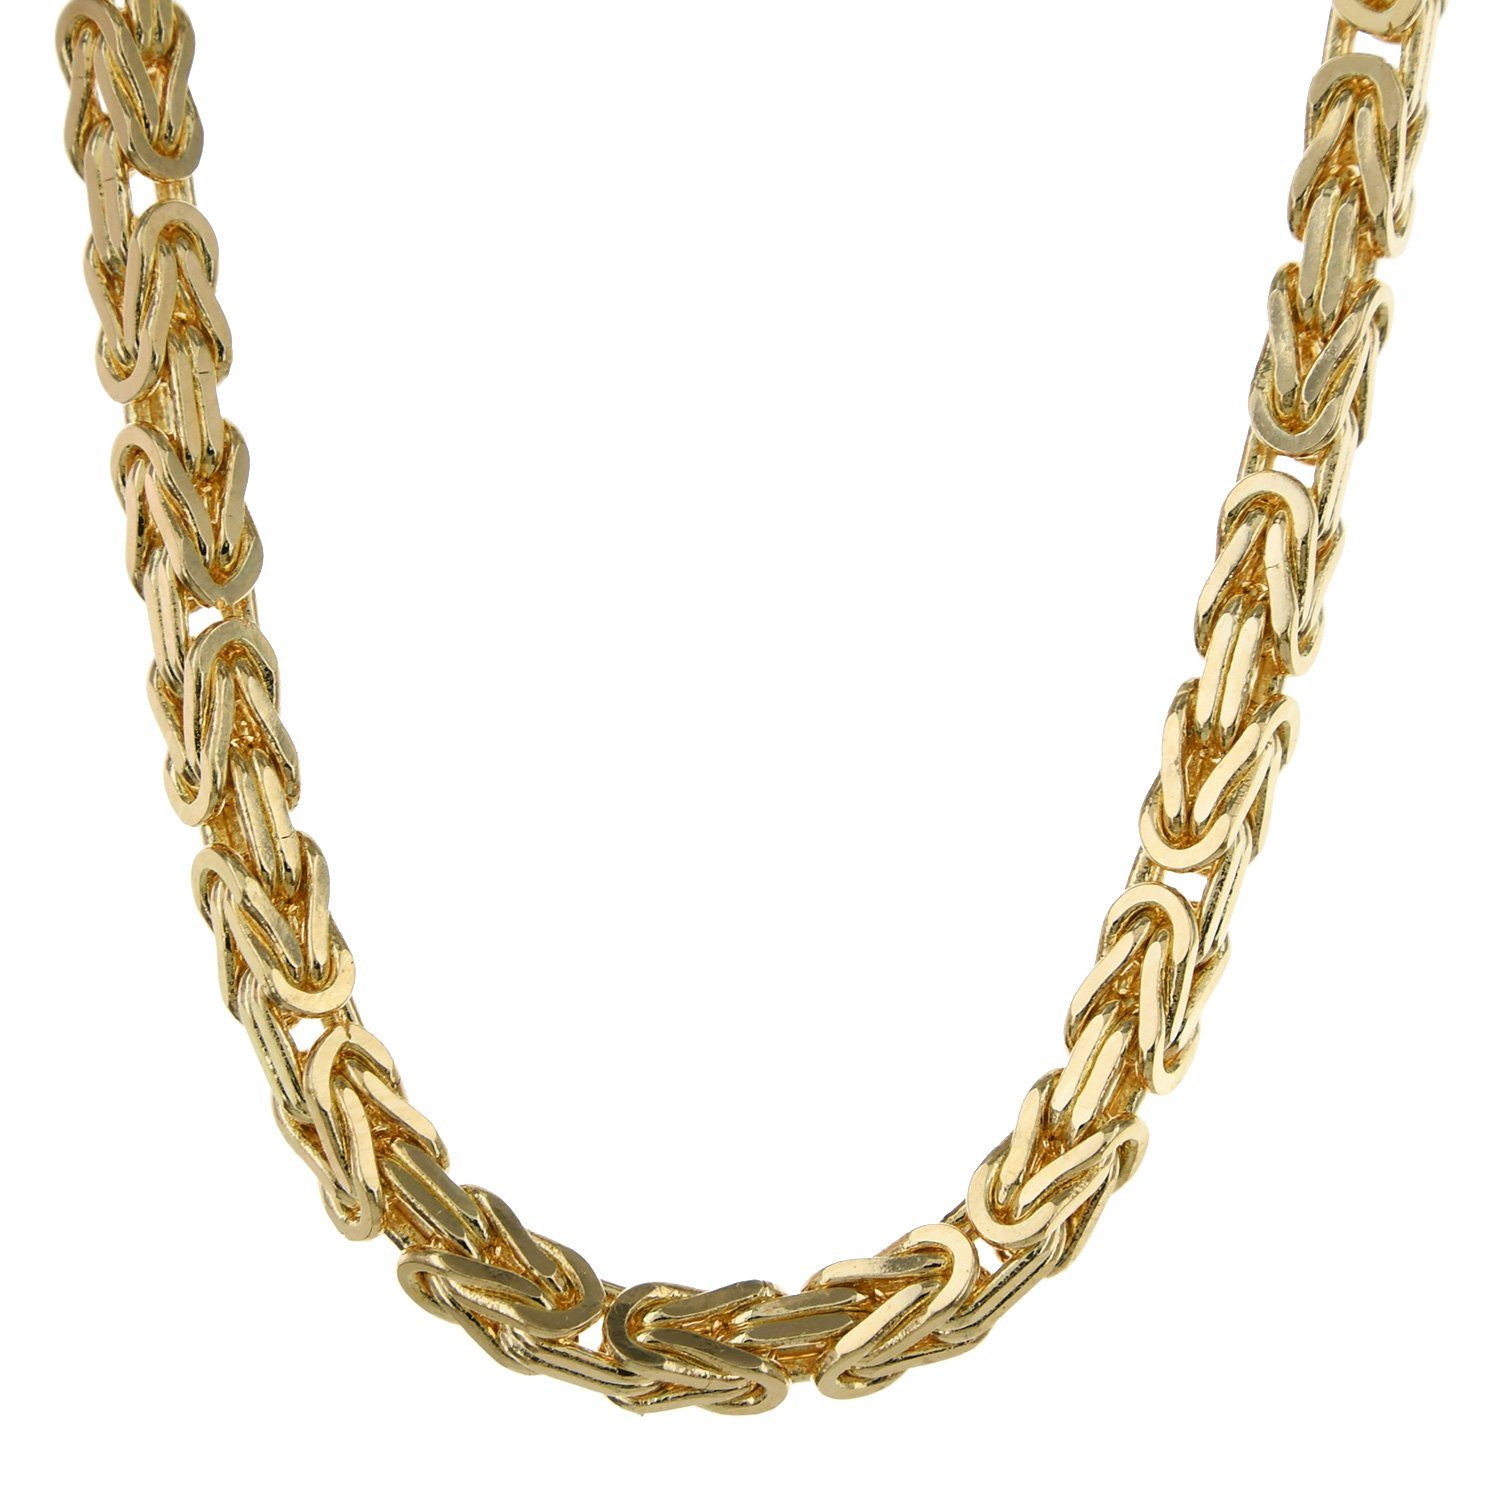 Herren Schmuck HOPLO Königskette 3,0 mm 50 cm 750 - 18 Karat Gold Halskette Königskette massiv Gold hochwertige Goldkette 34 g (